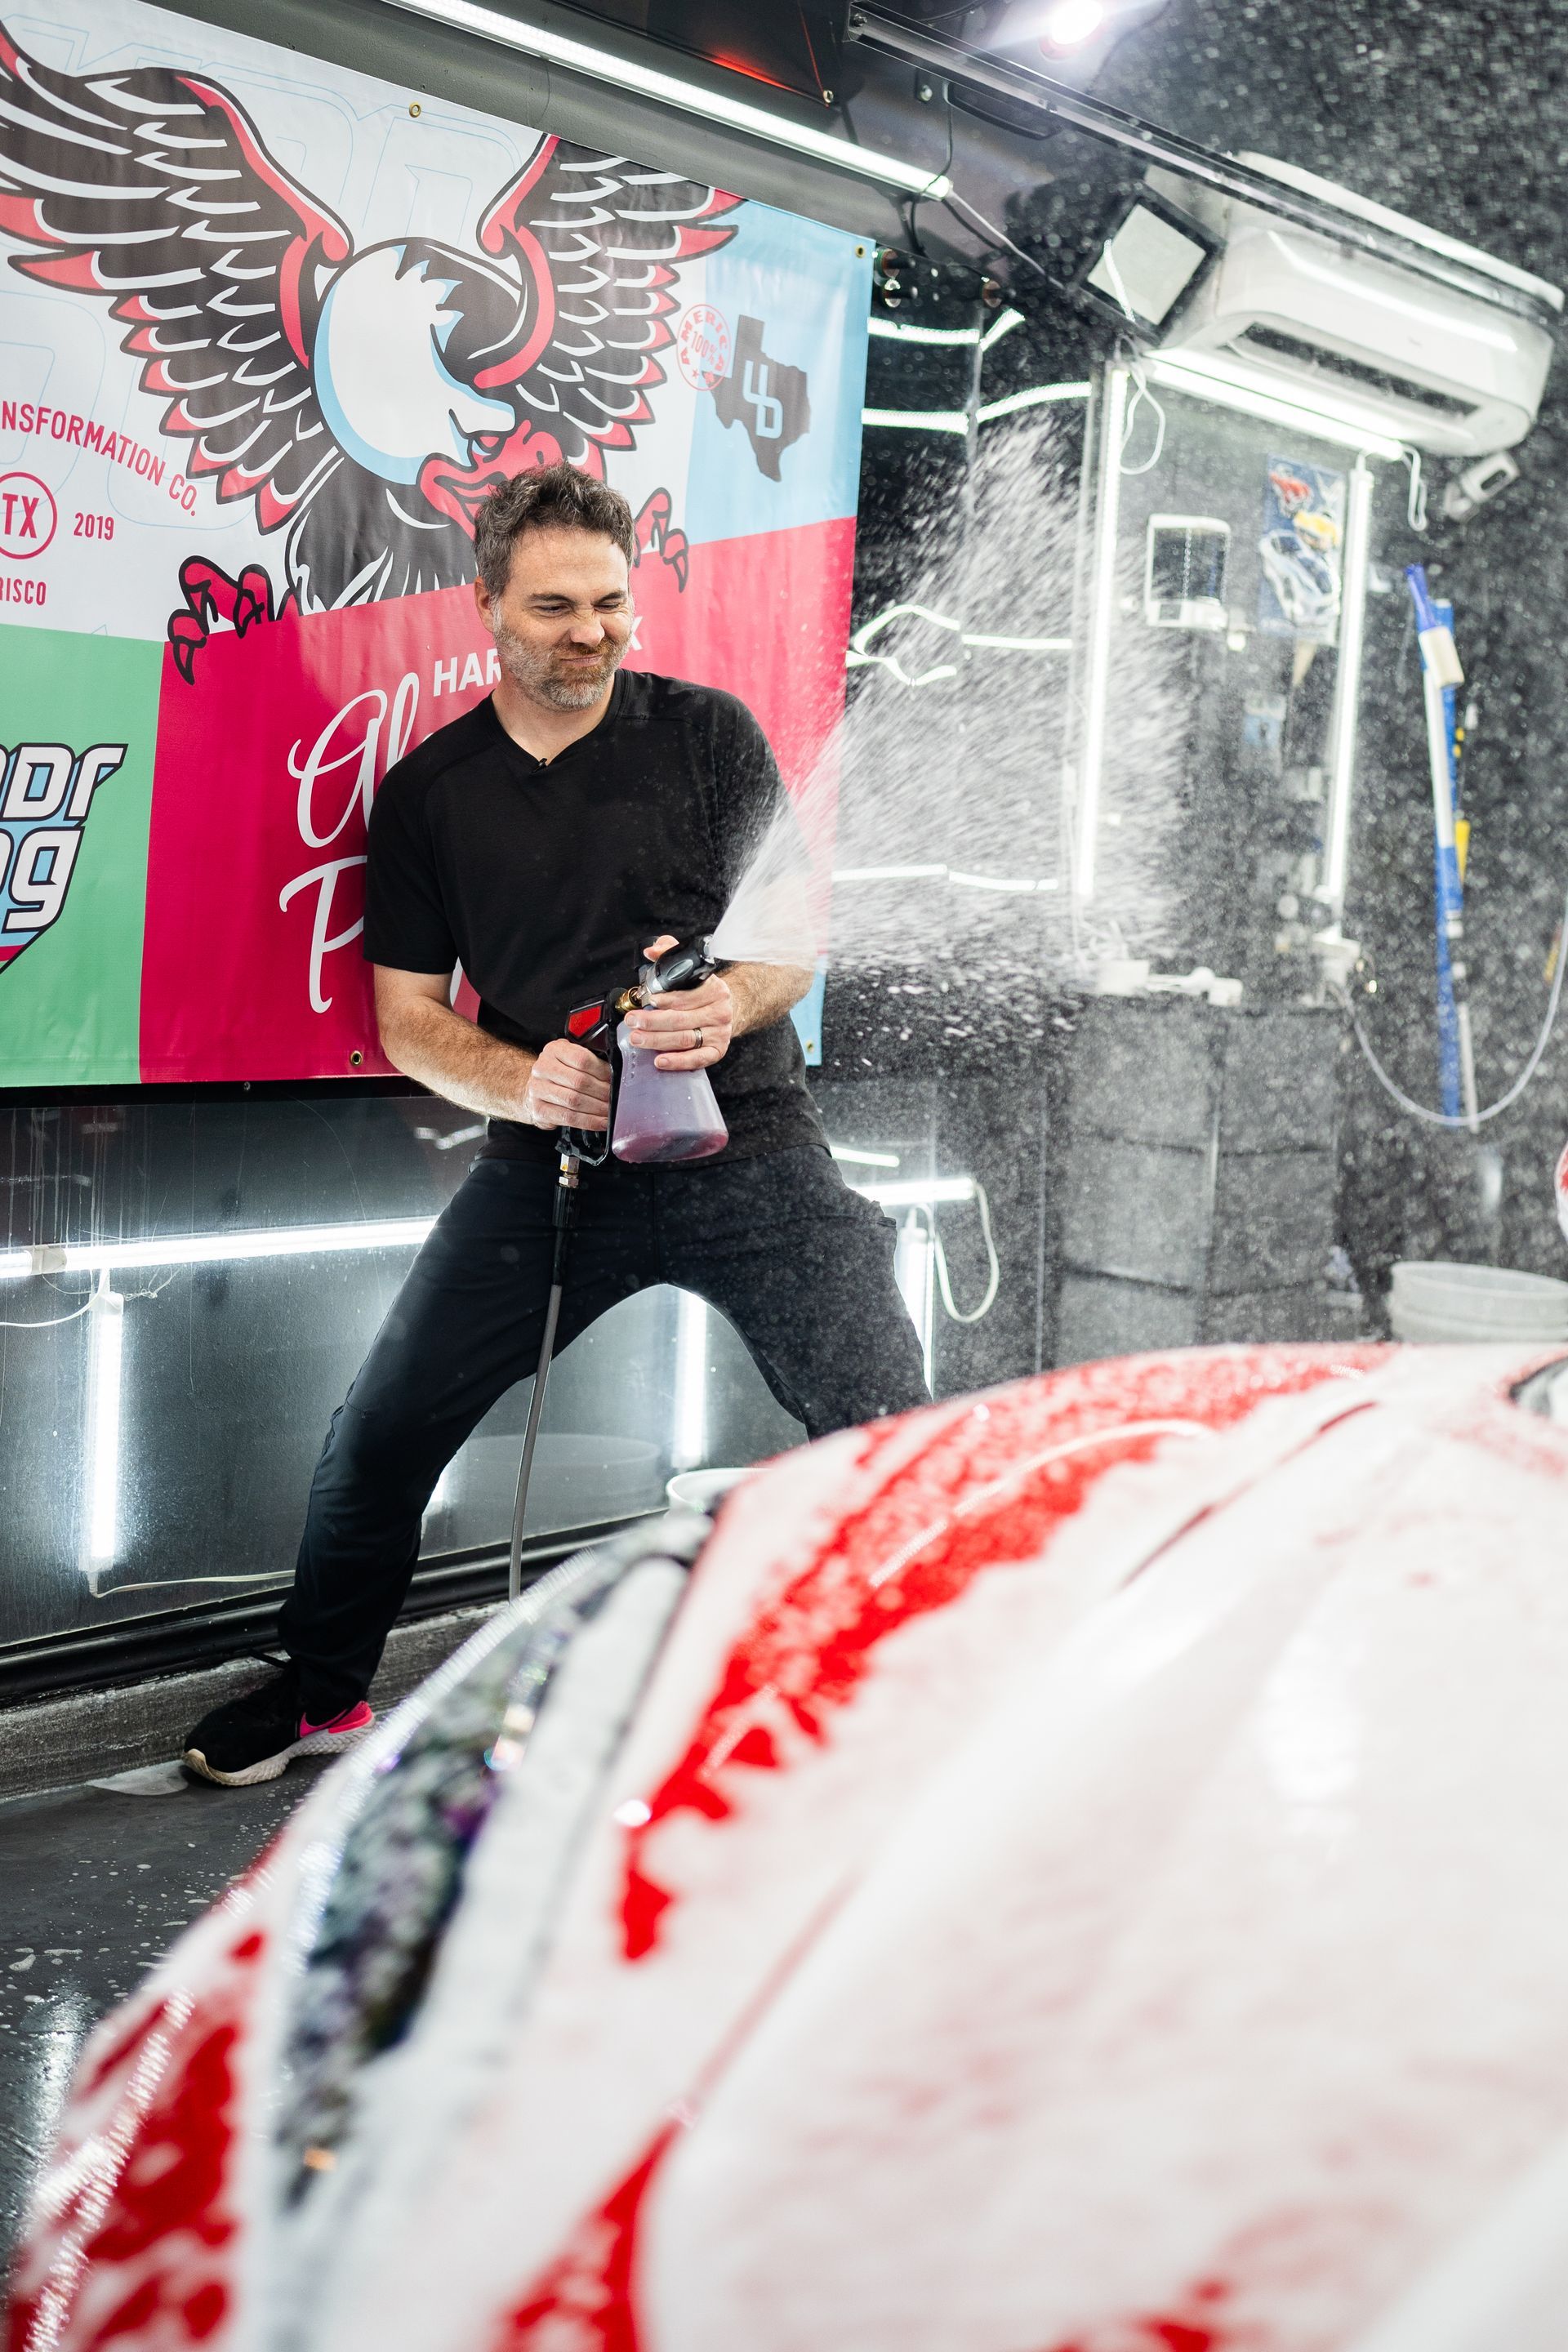 A man is spraying foam on a car in a car wash.